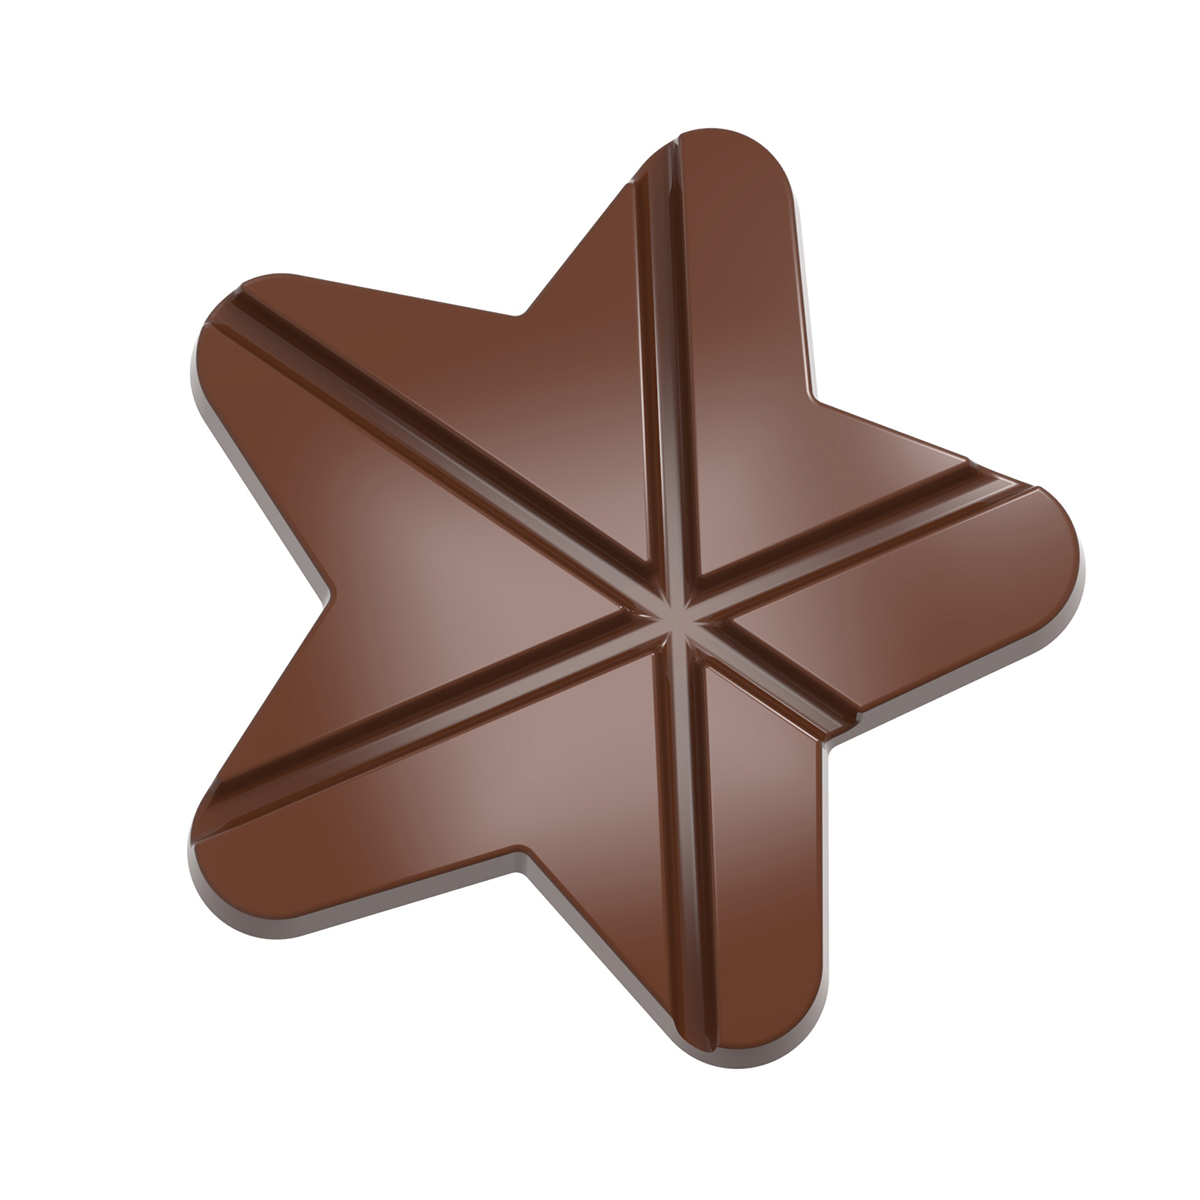 Professionel chokoladeform i polycarbonat - Tablet Star CW12045